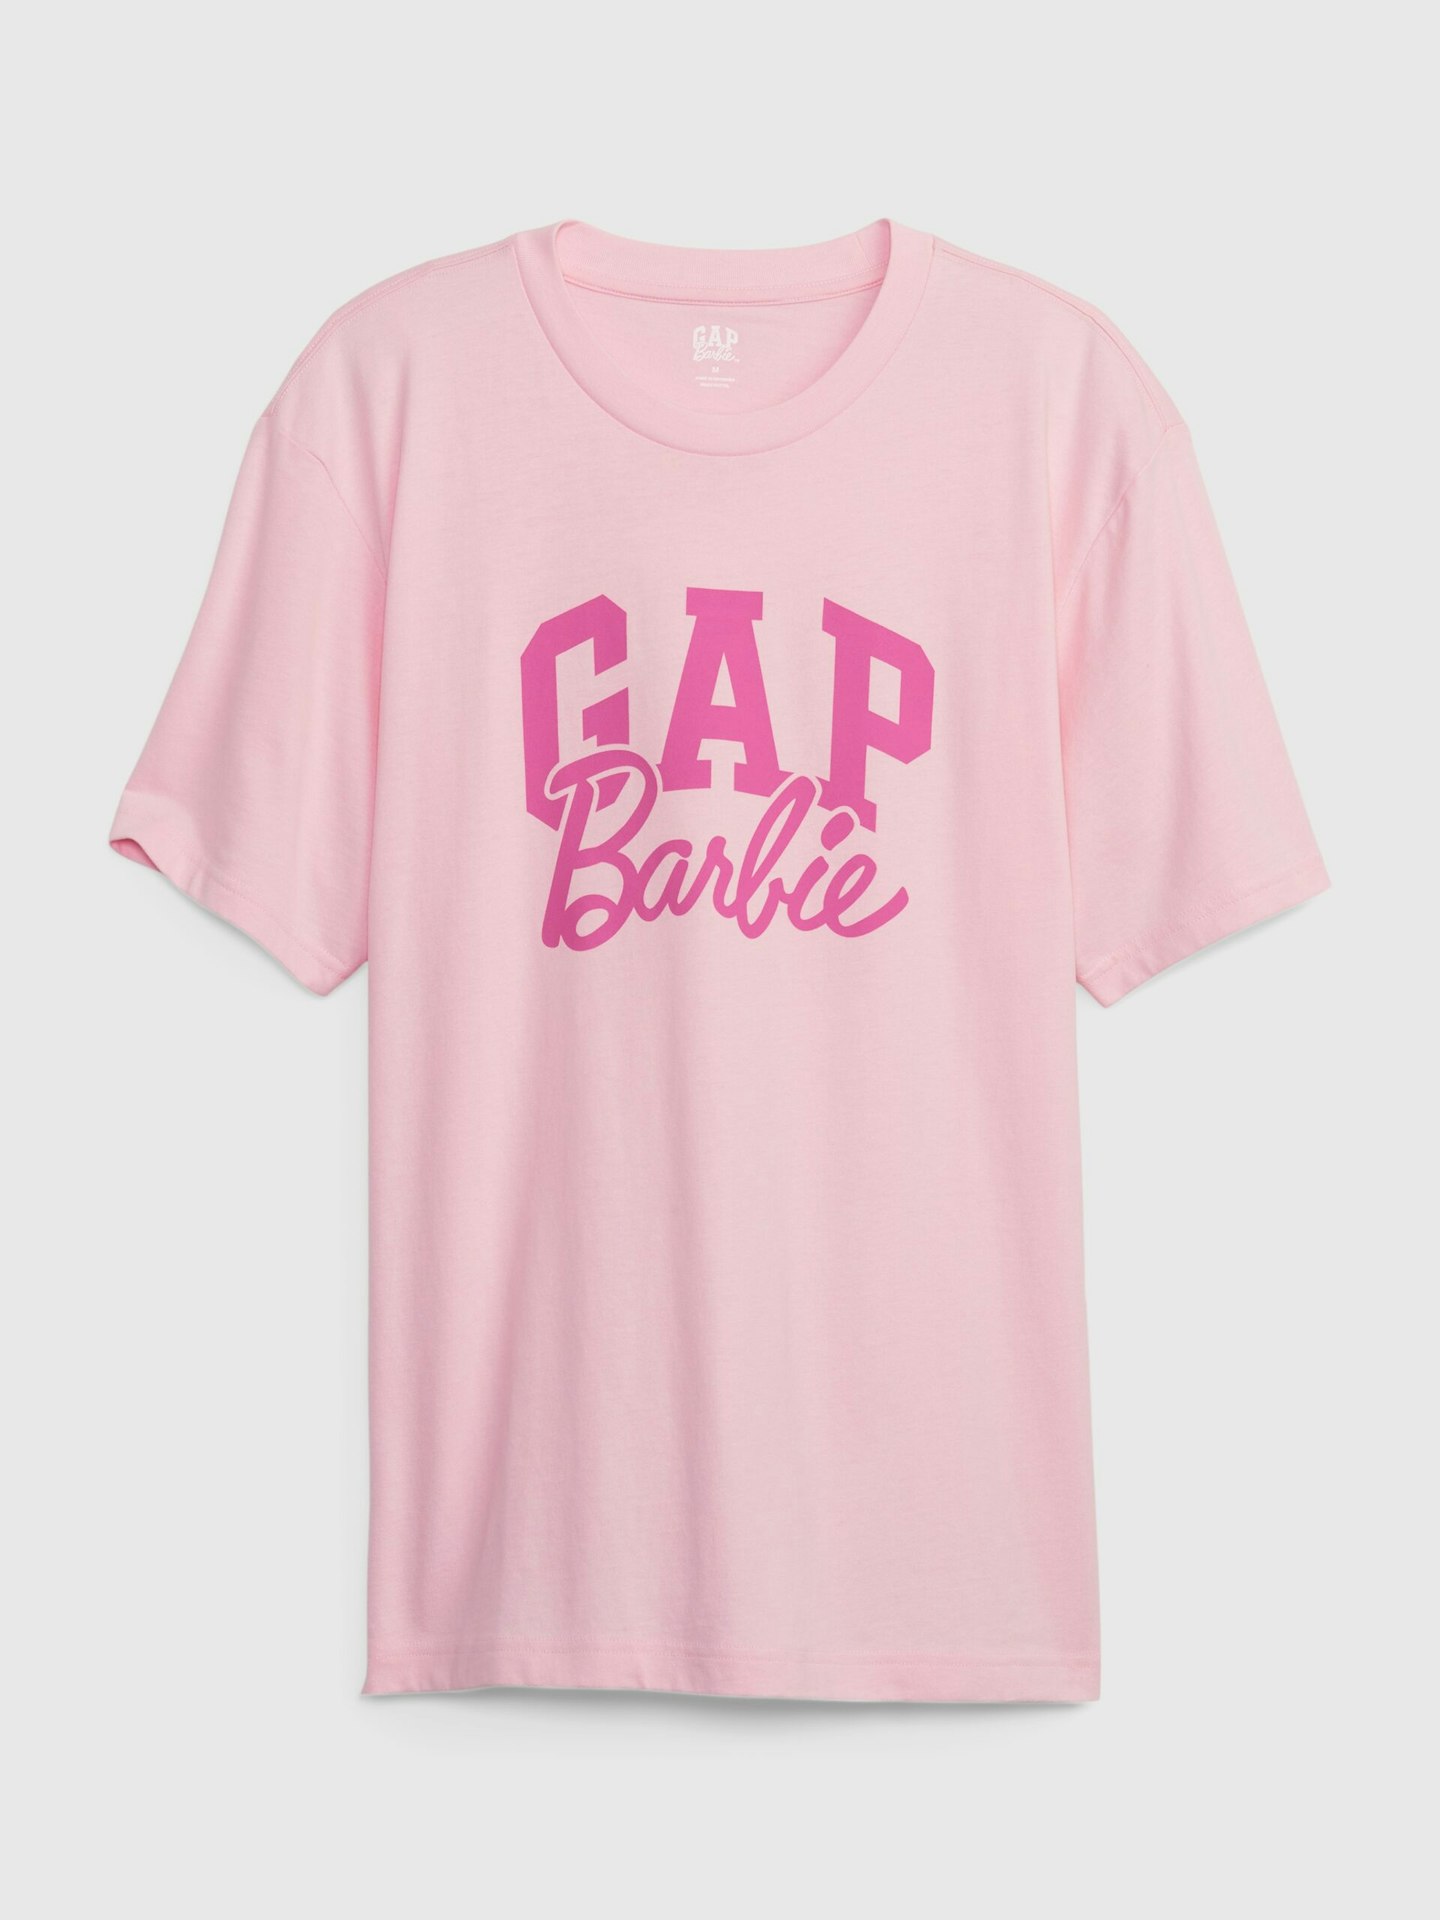 gap barbie tshirt